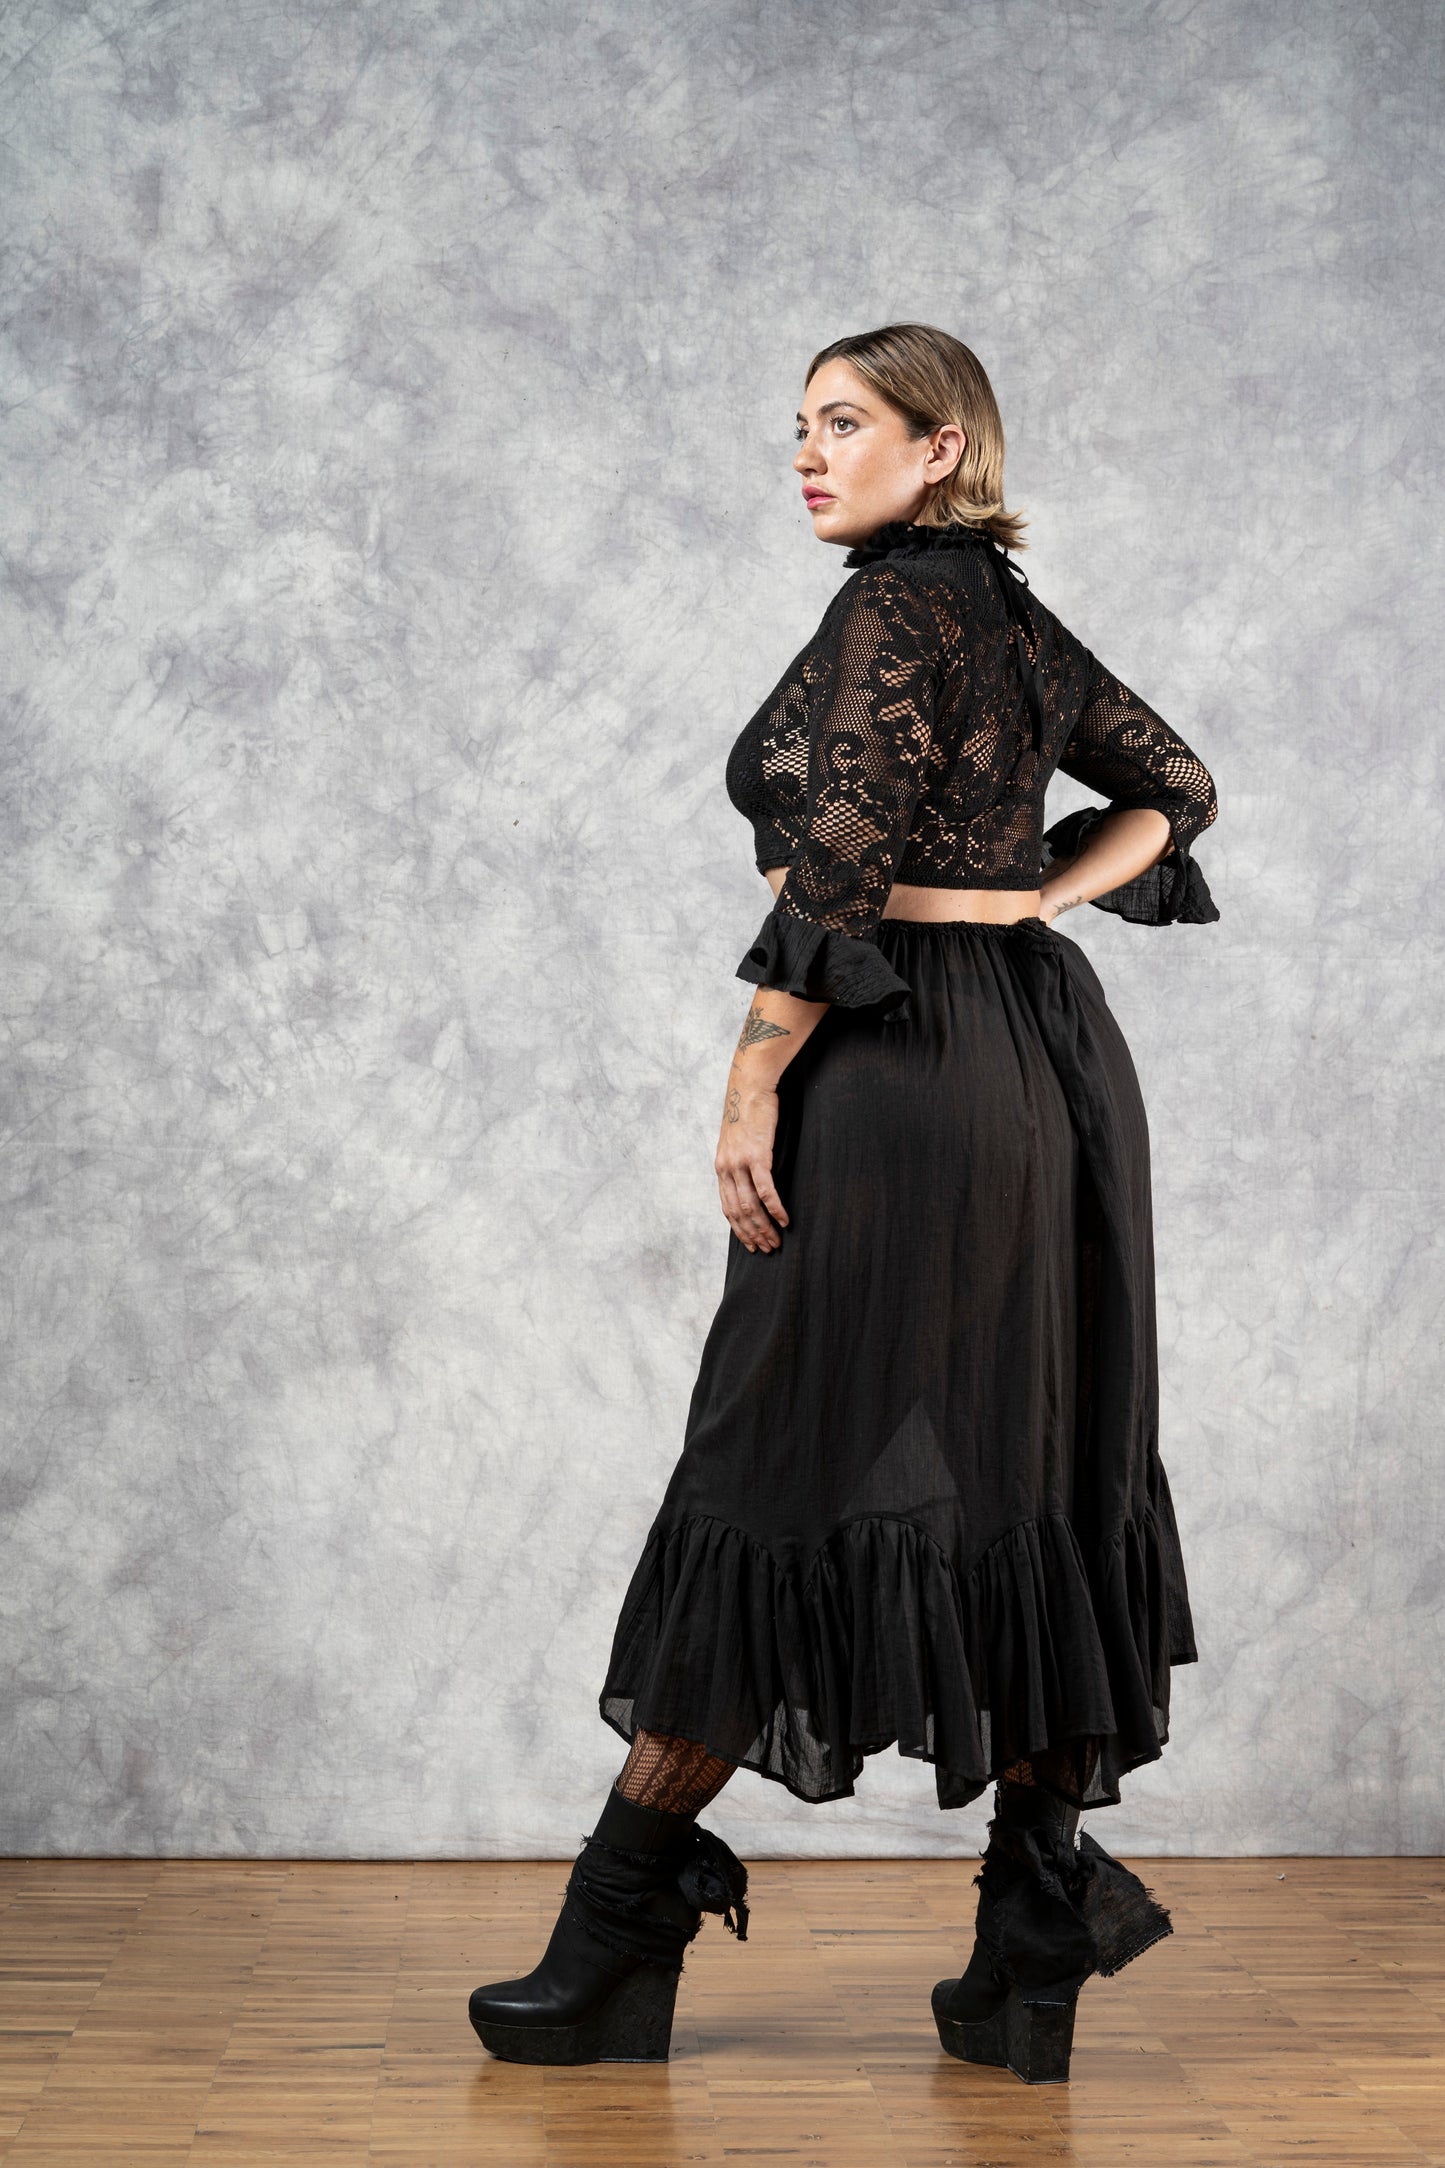 Semi-Sheer Petticoat Skirt